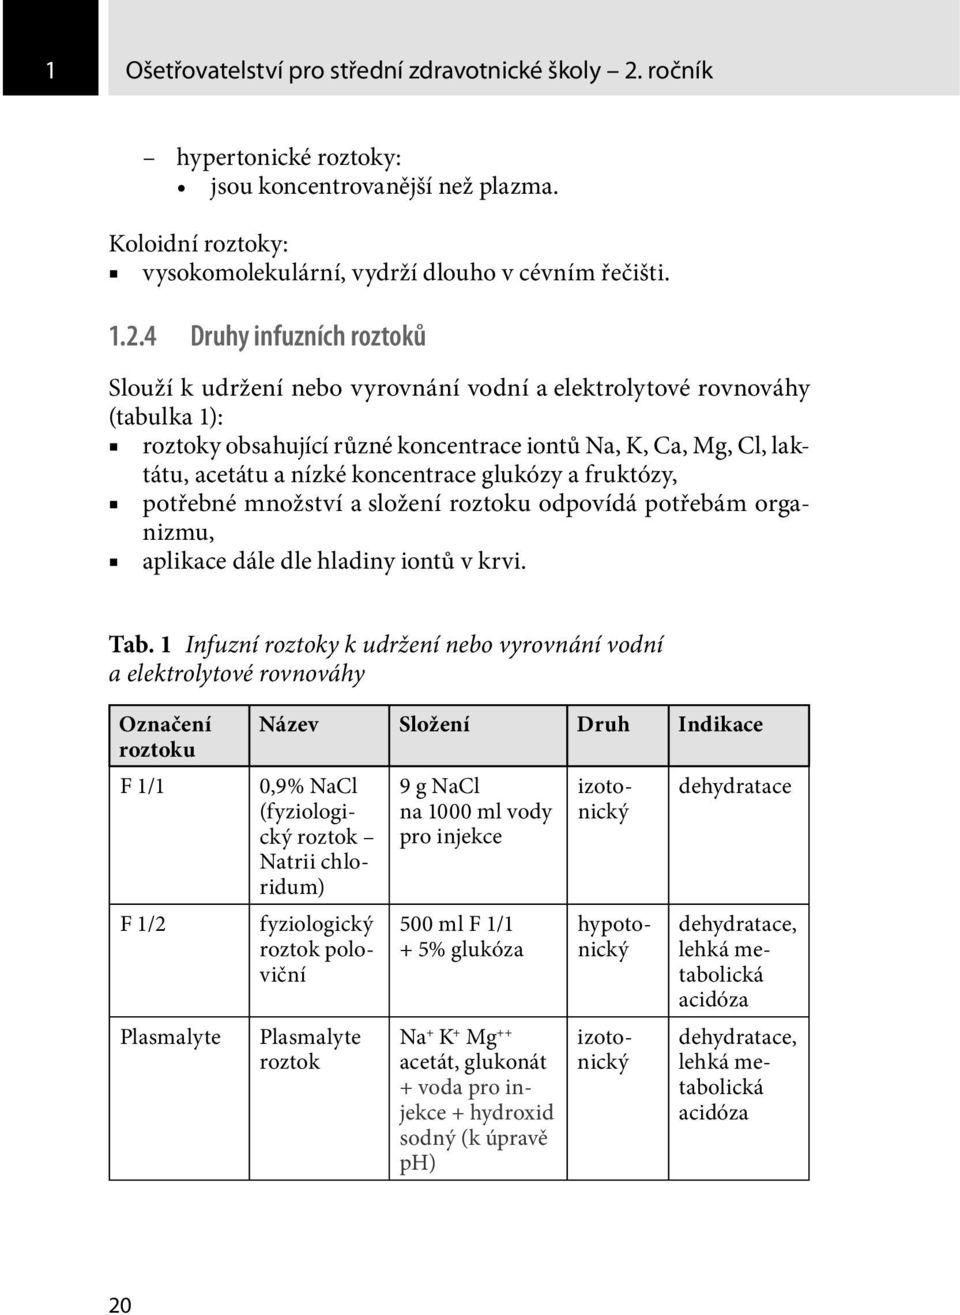 4 Druhy infuzních roztoků Slouží k udržení nebo vyrovnání vodní a elektrolytové rovnováhy (tabulka 1): roztoky obsahující různé koncentrace iontů Na, K, Ca, Mg, Cl, laktátu, acetátu a nízké